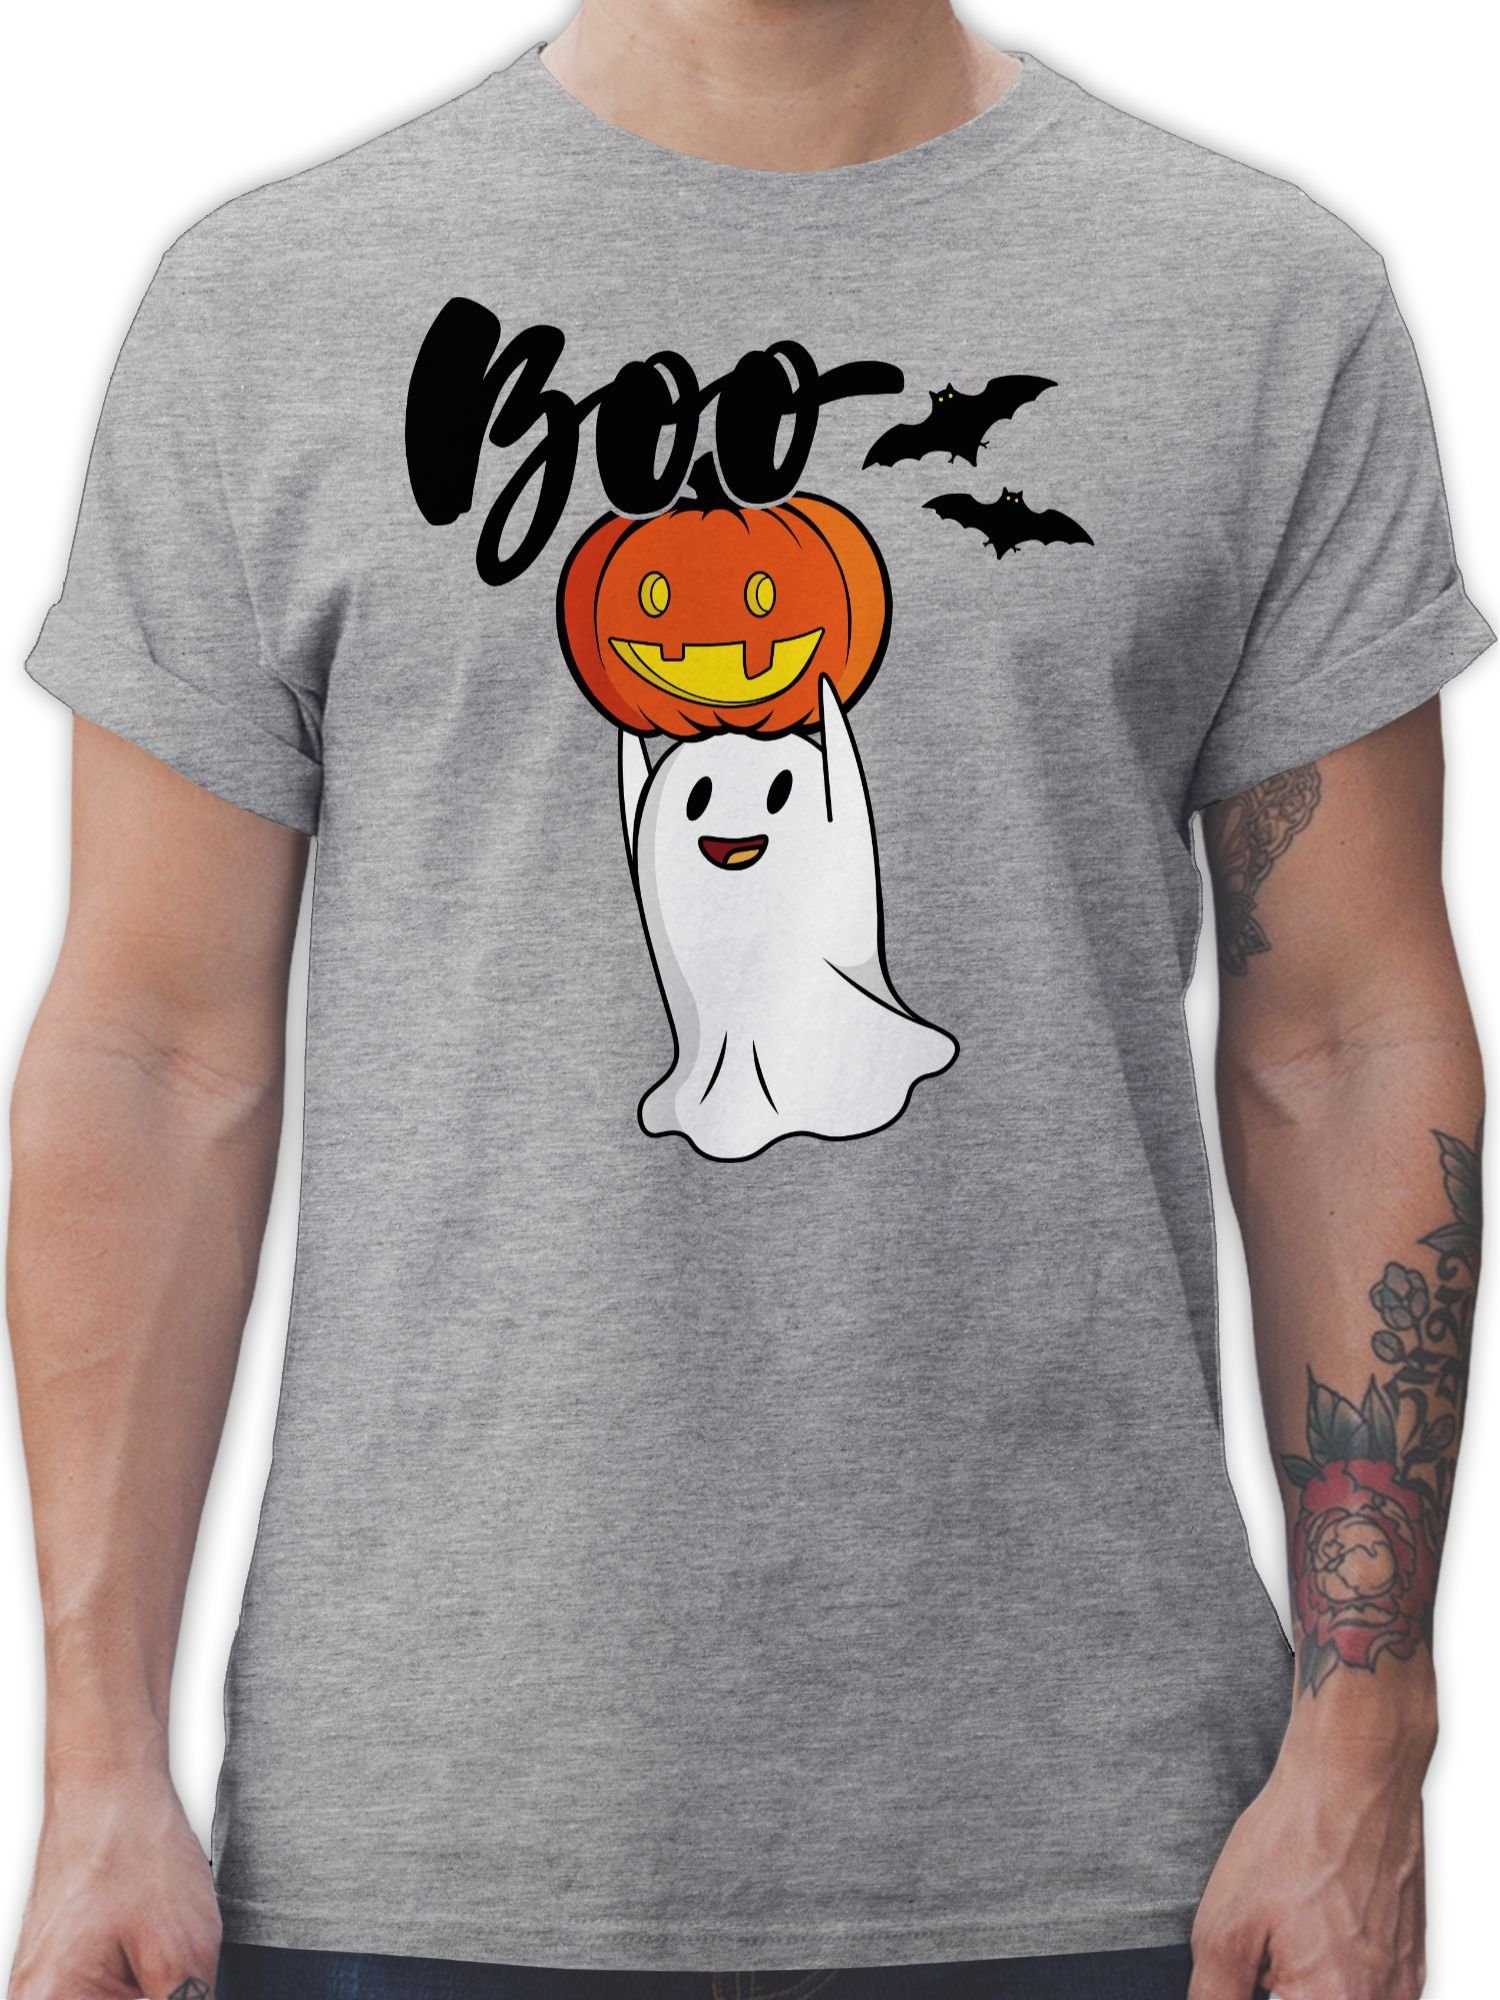 Shirtracer T-Shirt Boo Geist mit Kürbis - Halloween Kostüm Outfit - Herren  Premium T-Shirt t shirt herren grau - tshirt mit kürbis männer - halloween  shirts